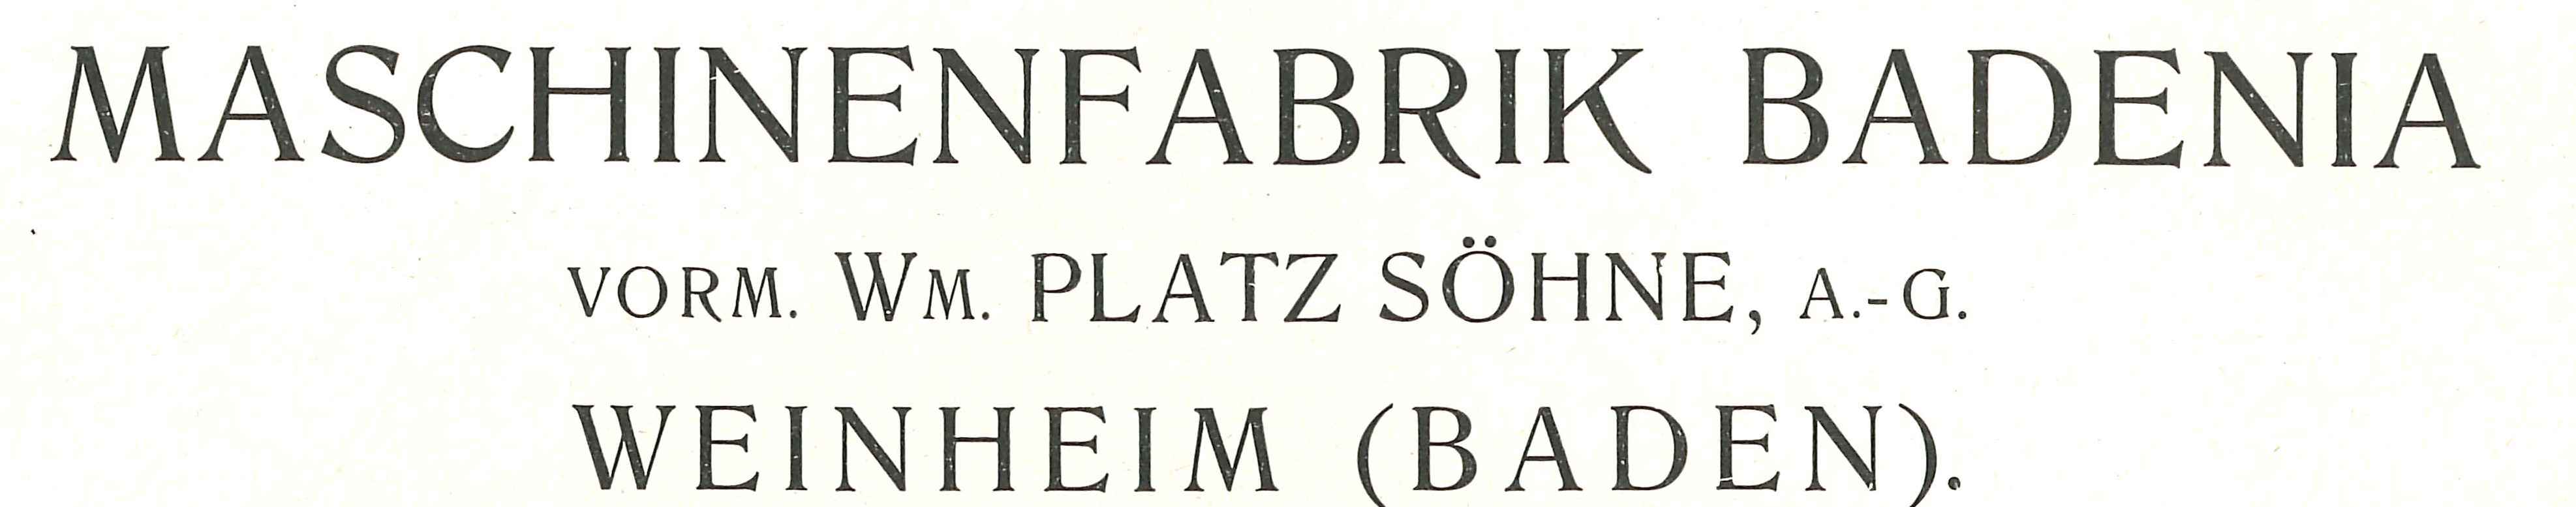 Badenia Maschinenfabrik AG vorm. Wilhelm Platz & Söhne